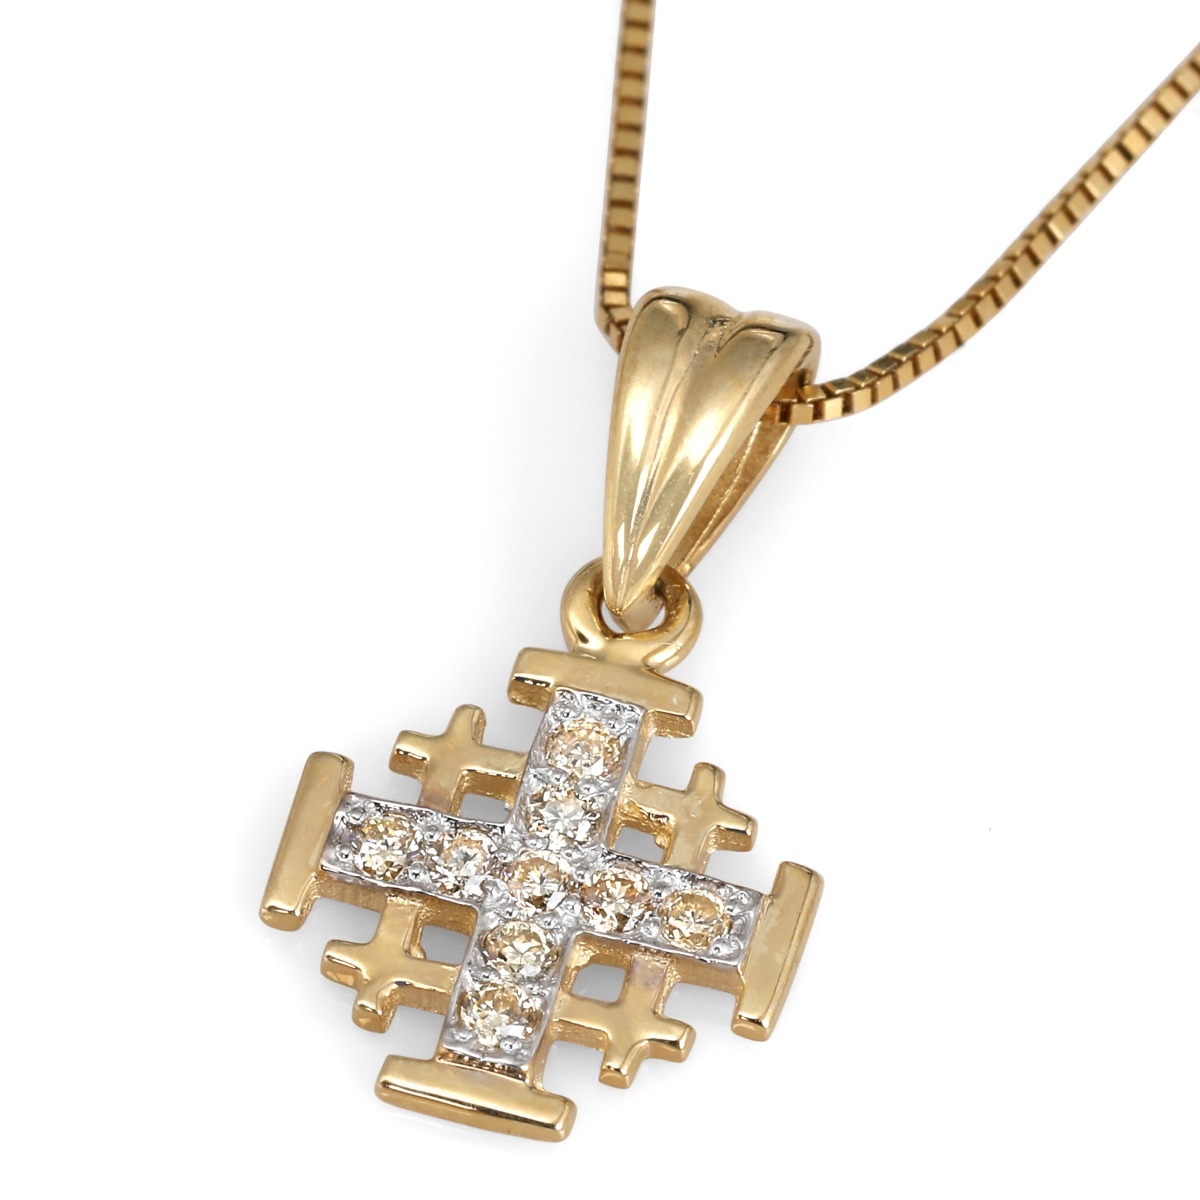 Anbinder Jewelry 14K Yellow Gold Classic Jerusalem Cross with 9 Champagne Yellow Diamonds - 1